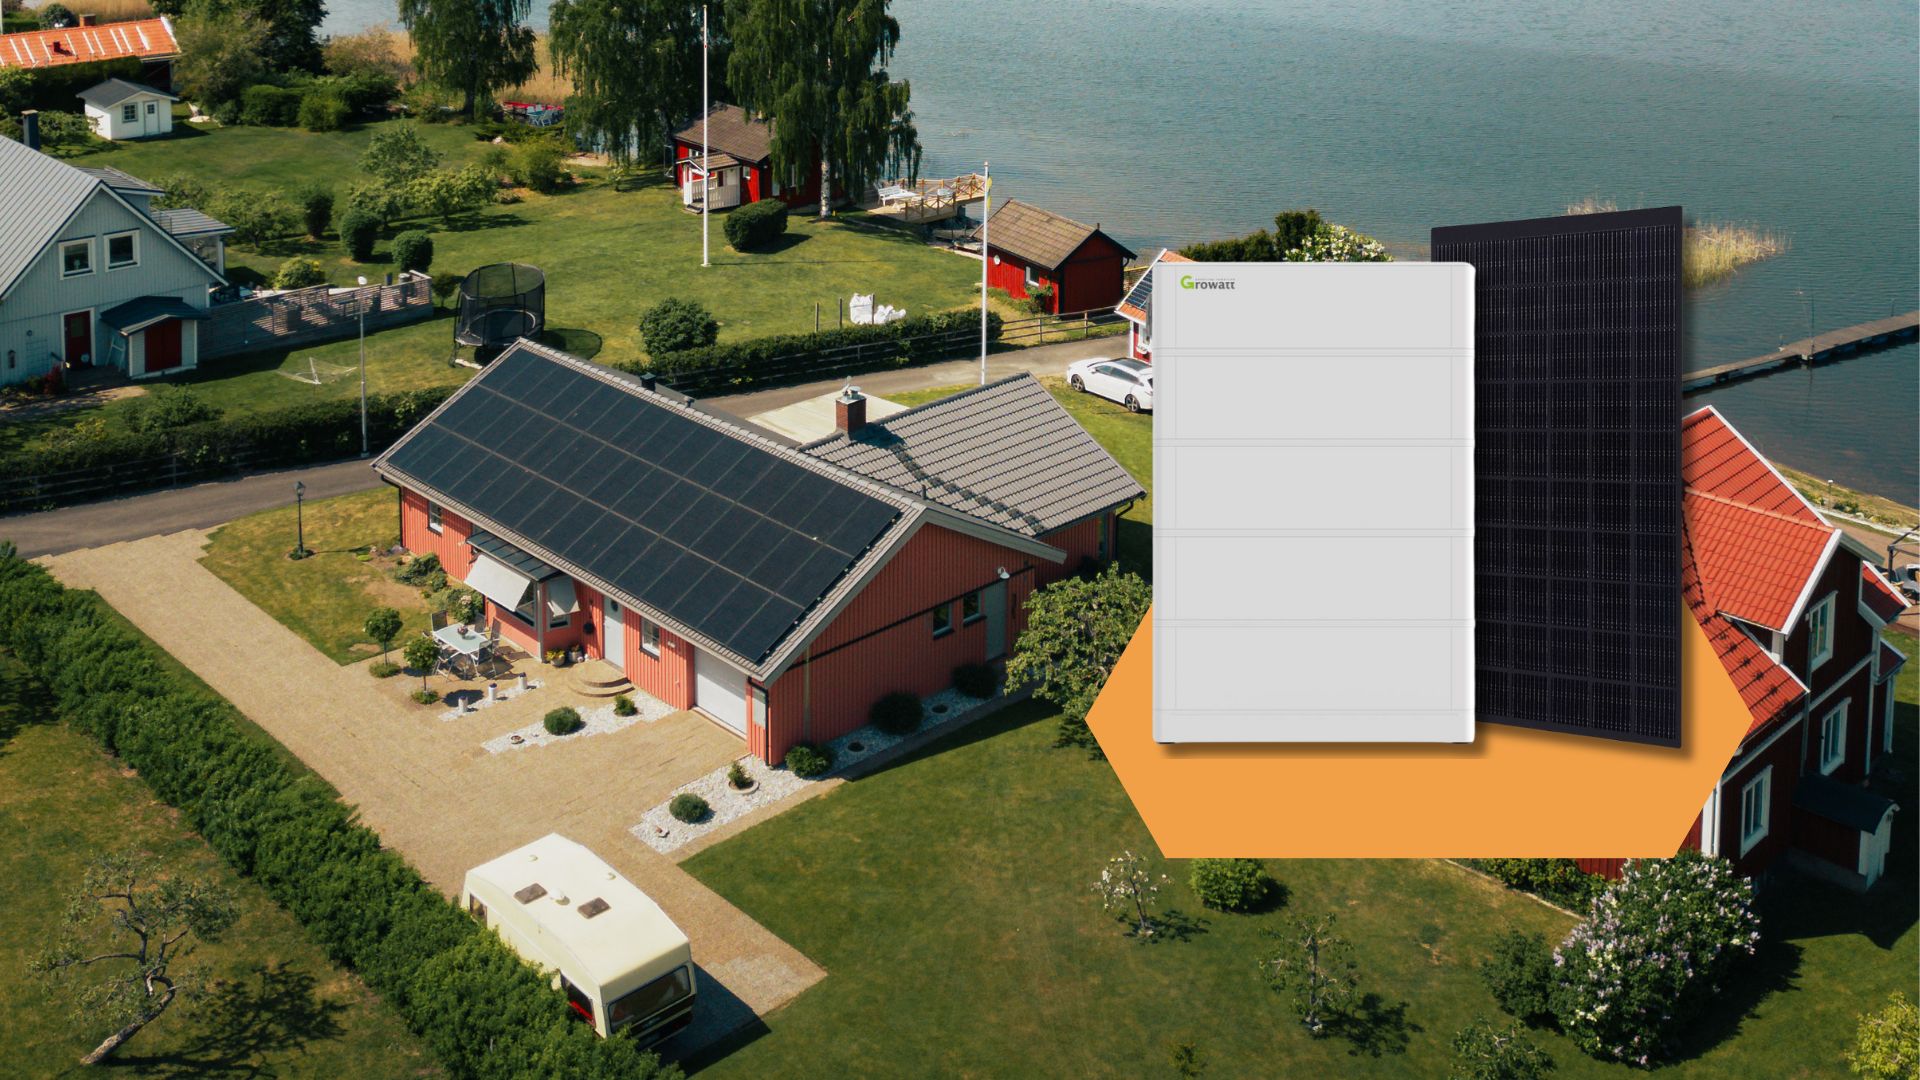 Ett luftfoto som visar ett rött hus med solpaneler på taket, bredvid en bild av en Growatt-batterilagringsenhet och en solpanel, symboliserar CheckWatts vision för framtidens hållbara energiförvaltning.